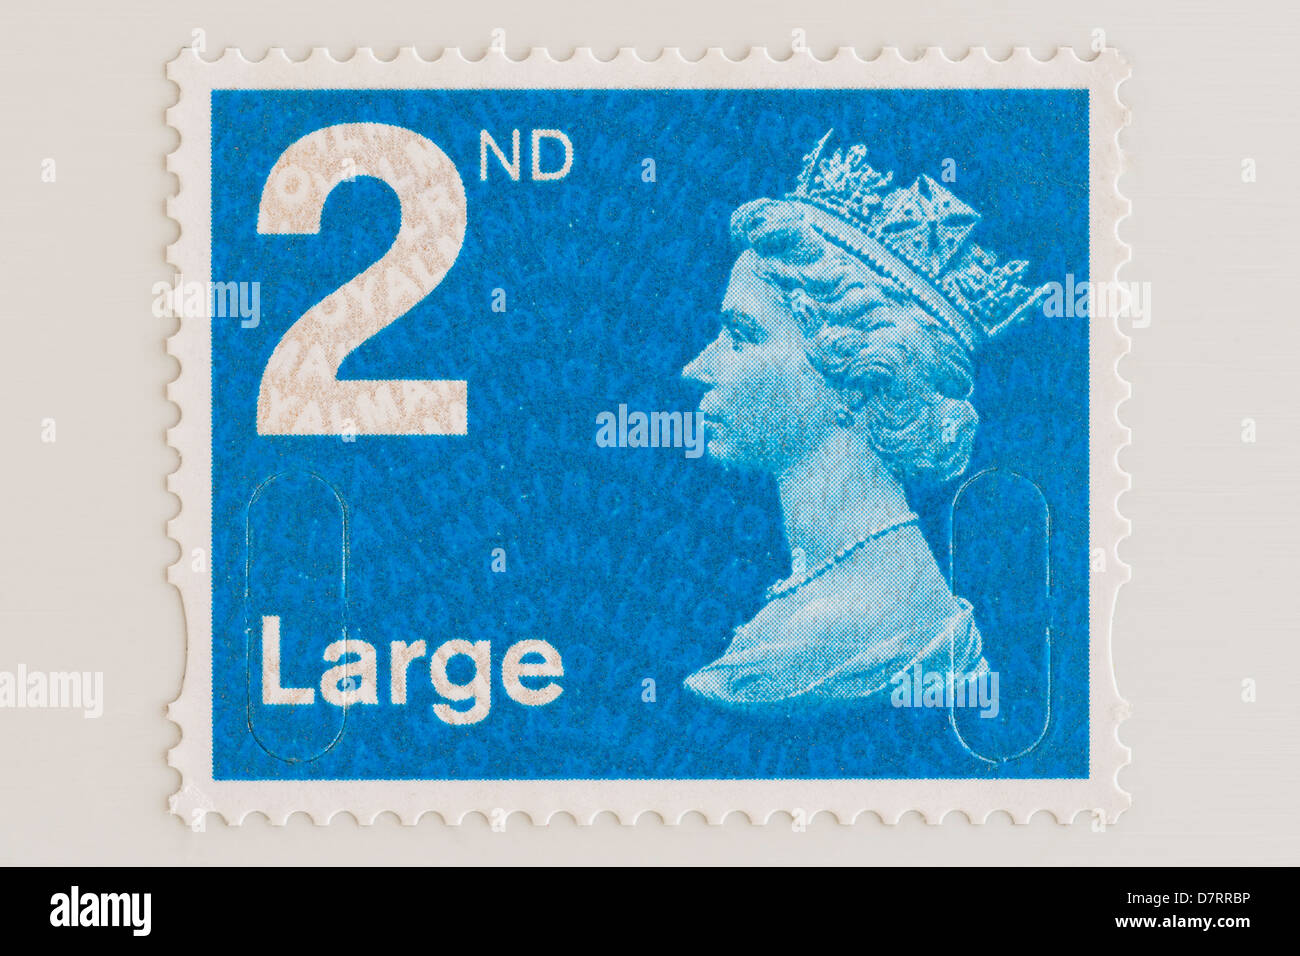 Una segunda clase de Royal Mail estampilla postal para letras grandes Foto de stock